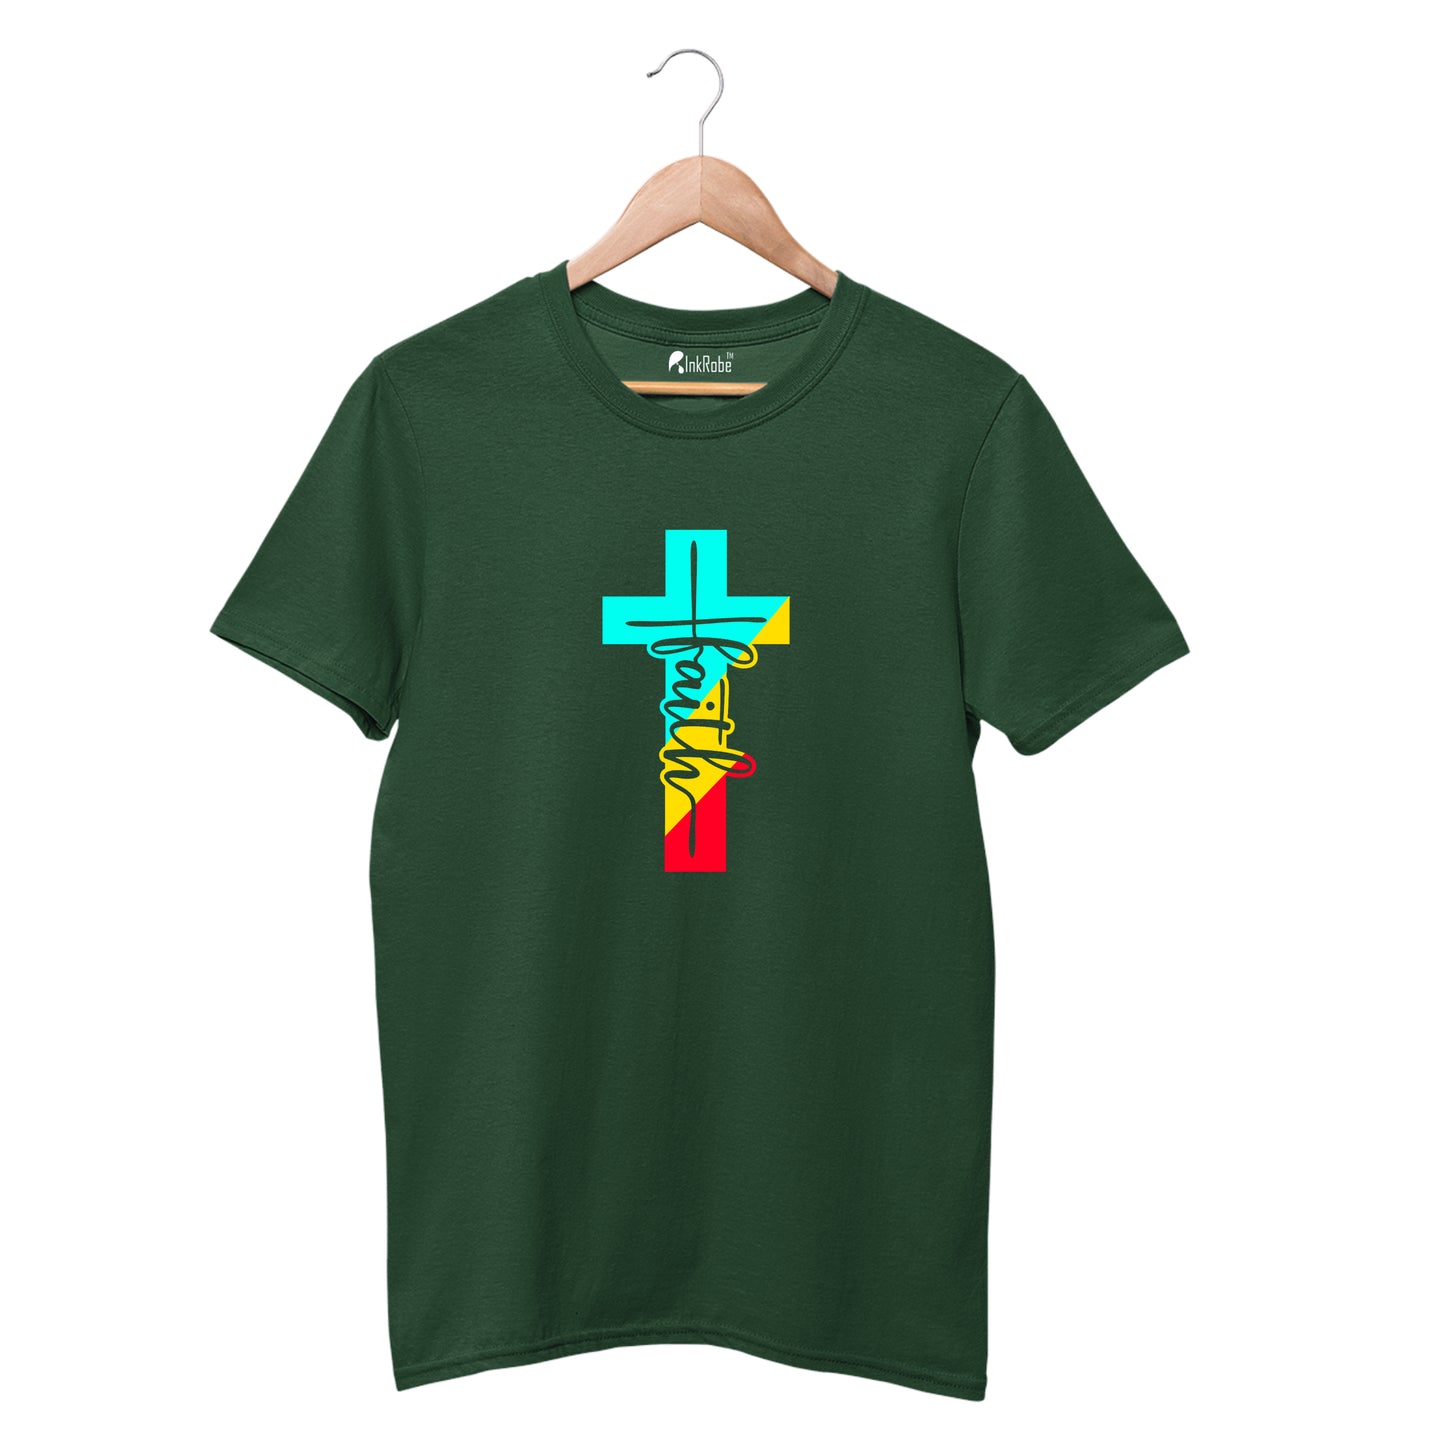 Faith T shirt